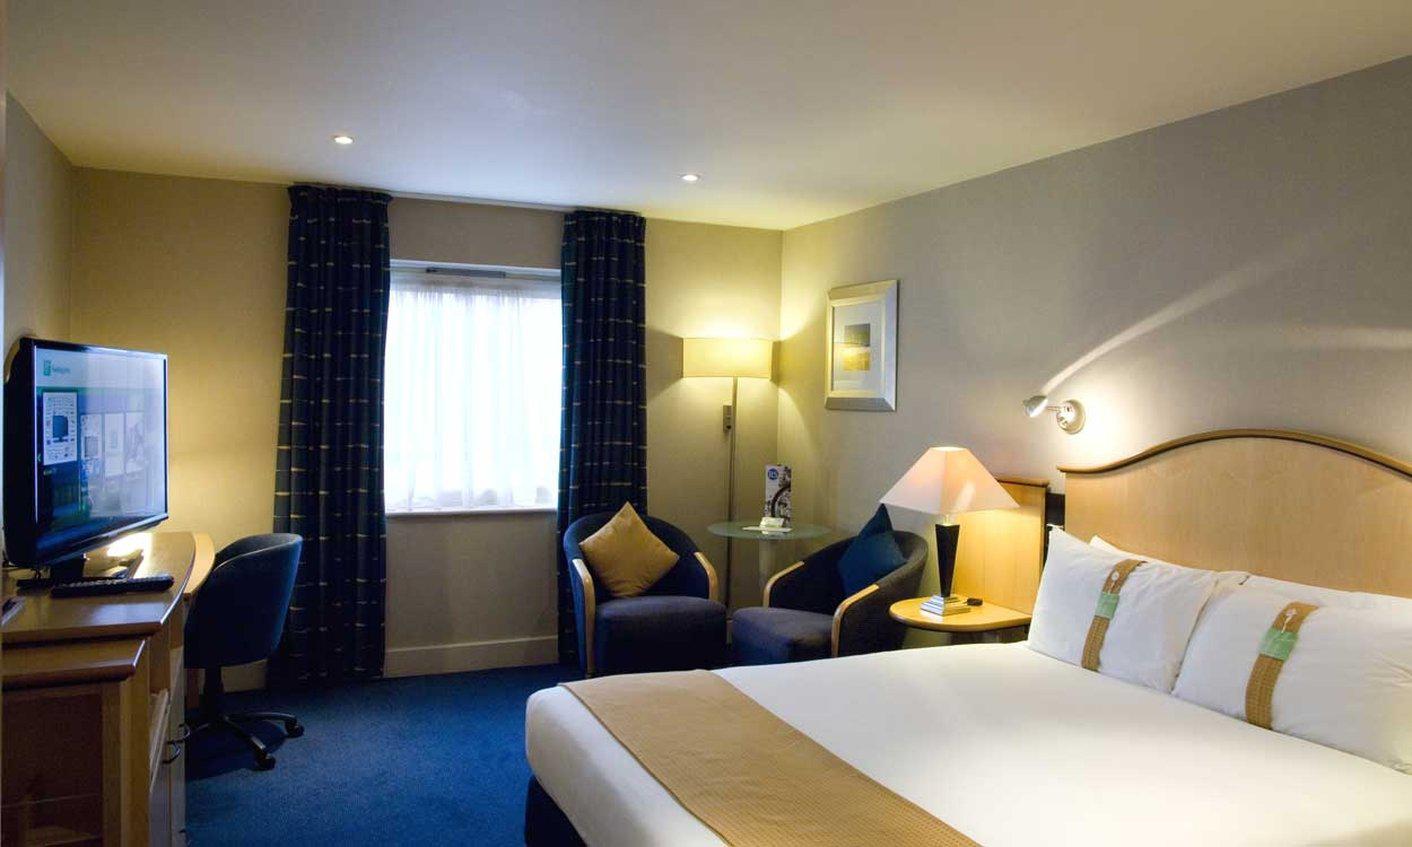 Holiday Inn London - Shepperton, an IHG Hotel Shepperton 01932 899988